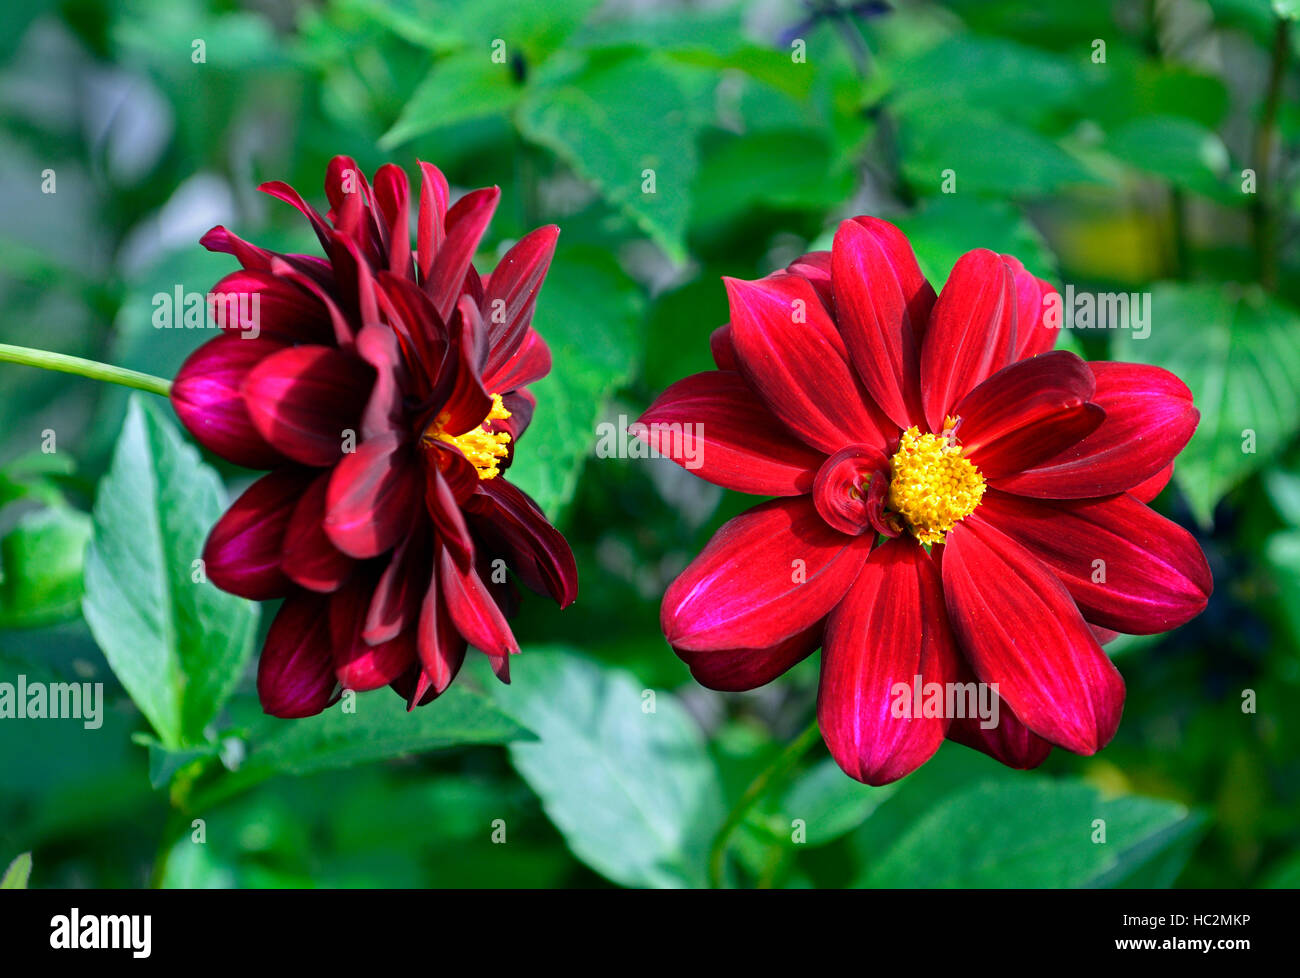 red scarlet dahlia dahlias single flowers flowering seedling seedlings perennial RM Floral Stock Photo